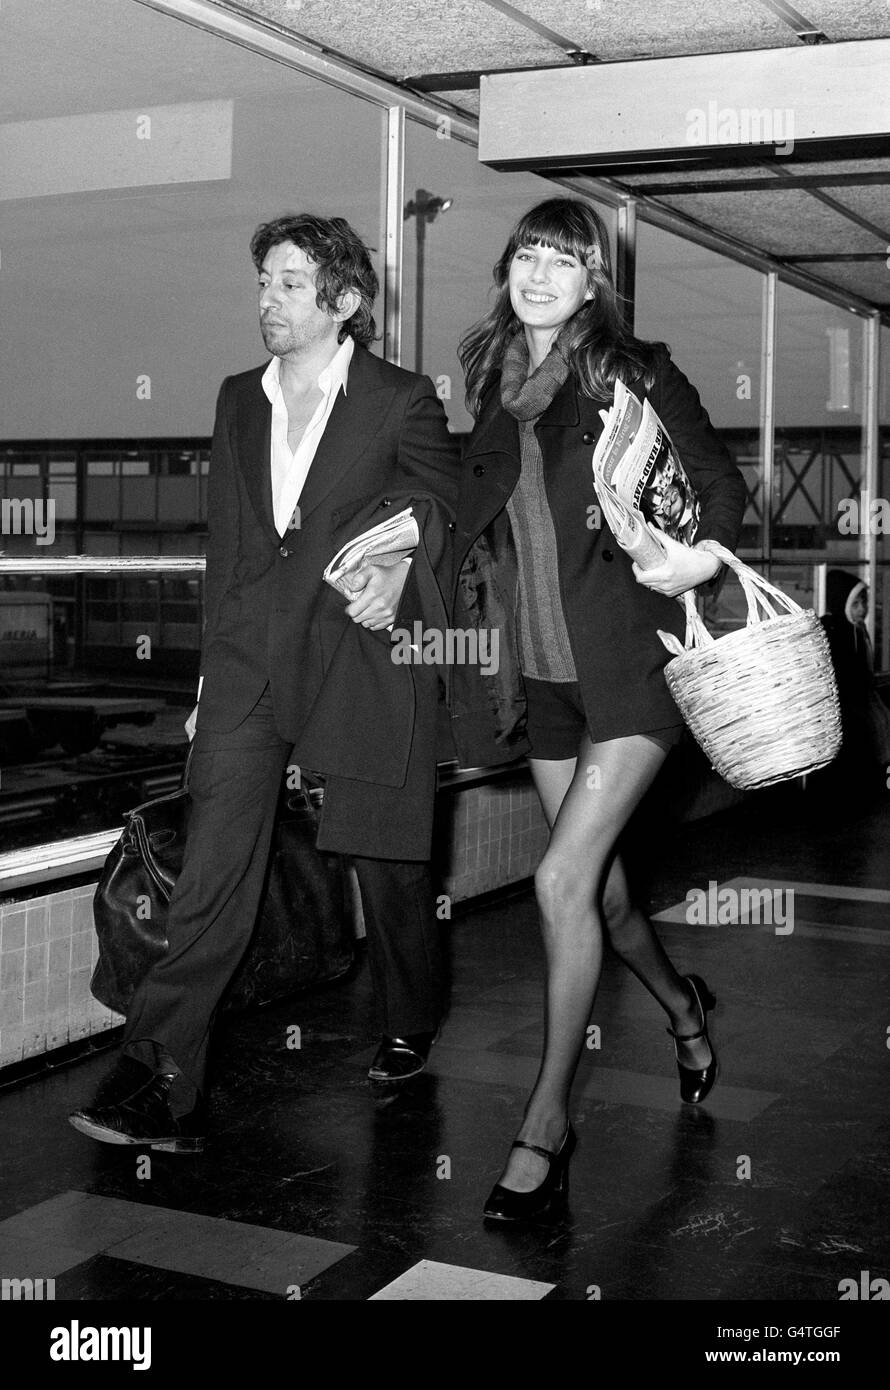 Jane Birkin - Flughafen Heathrow - London. Die Schauspielerin Jane Birkin und Serge Gainsbourg am Londoner Flughafen Heathrow nach ihrer Ankunft aus Paris. Stockfoto